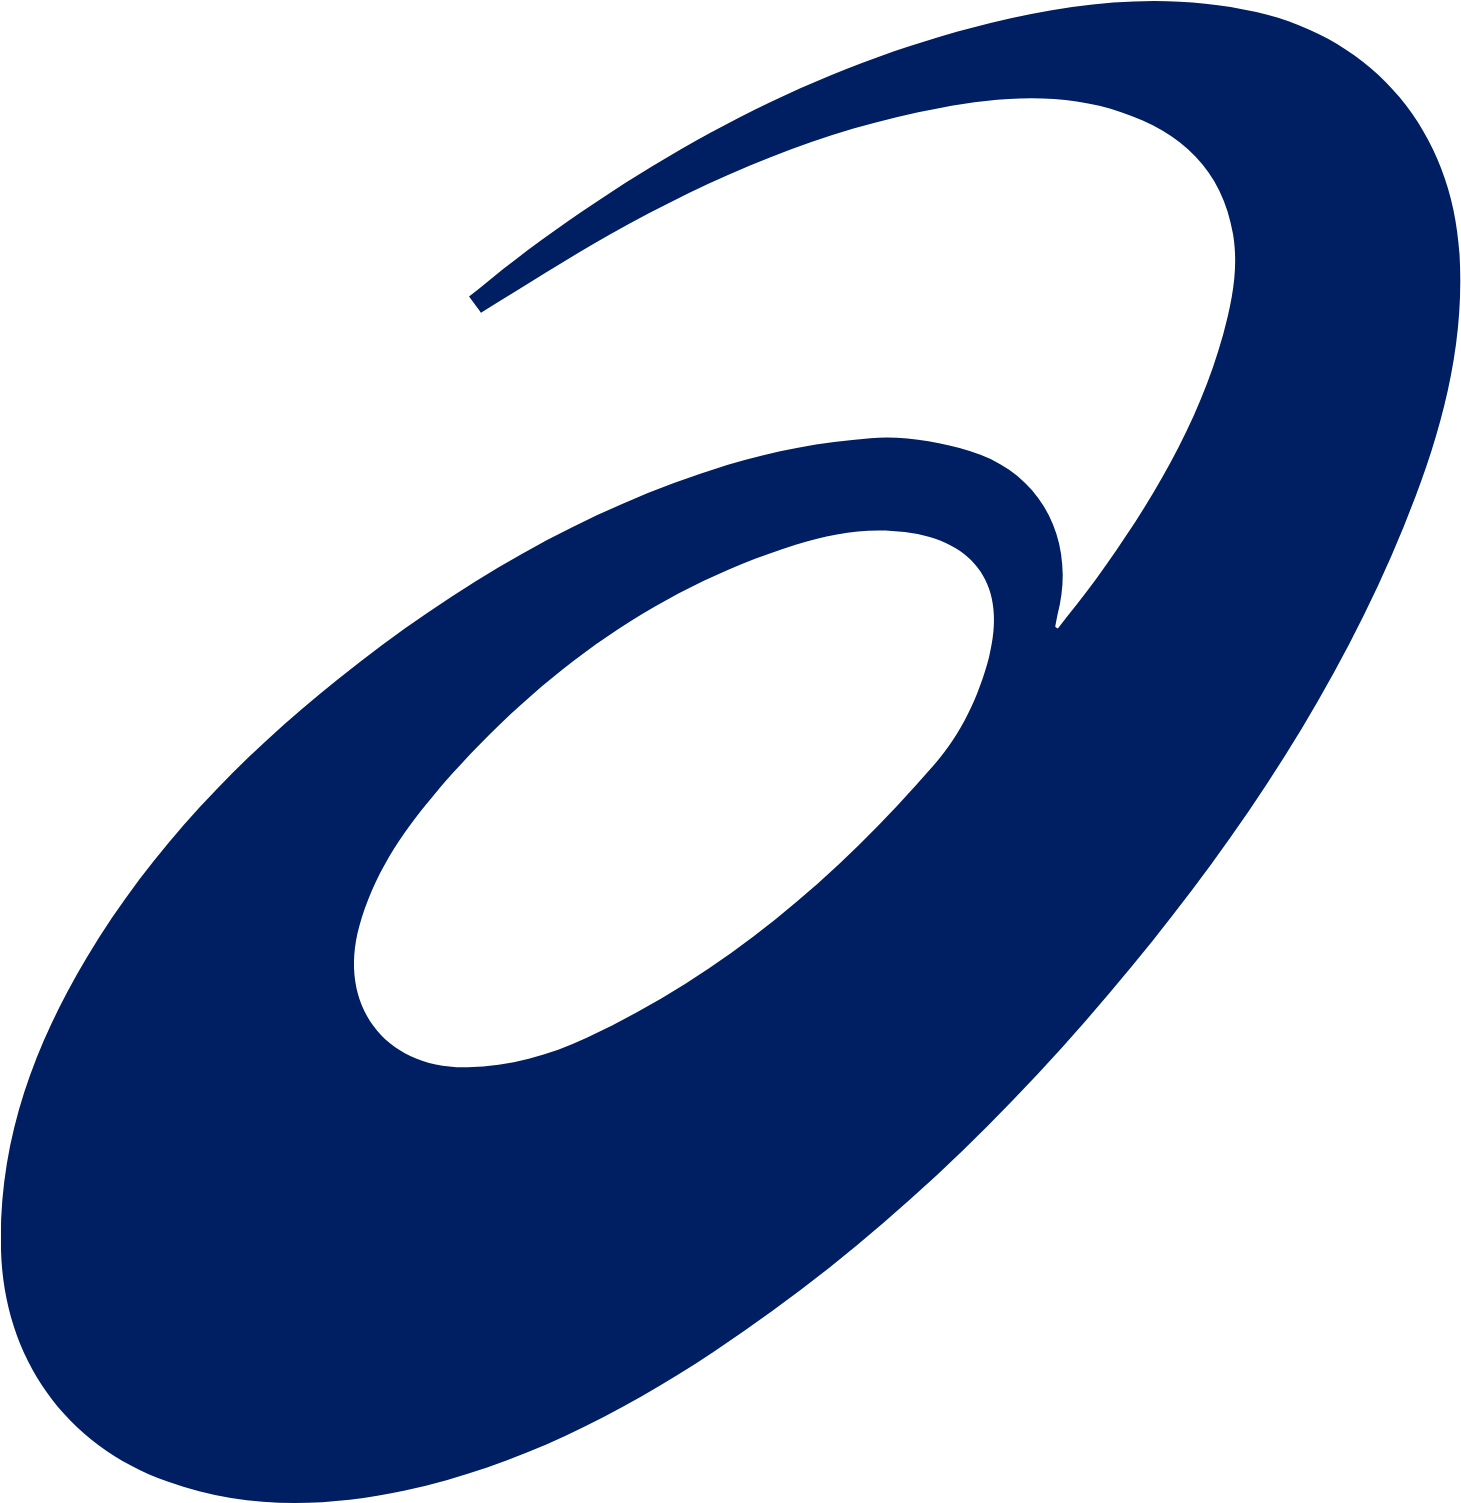 ASICS Corporation logo (PNG transparent)